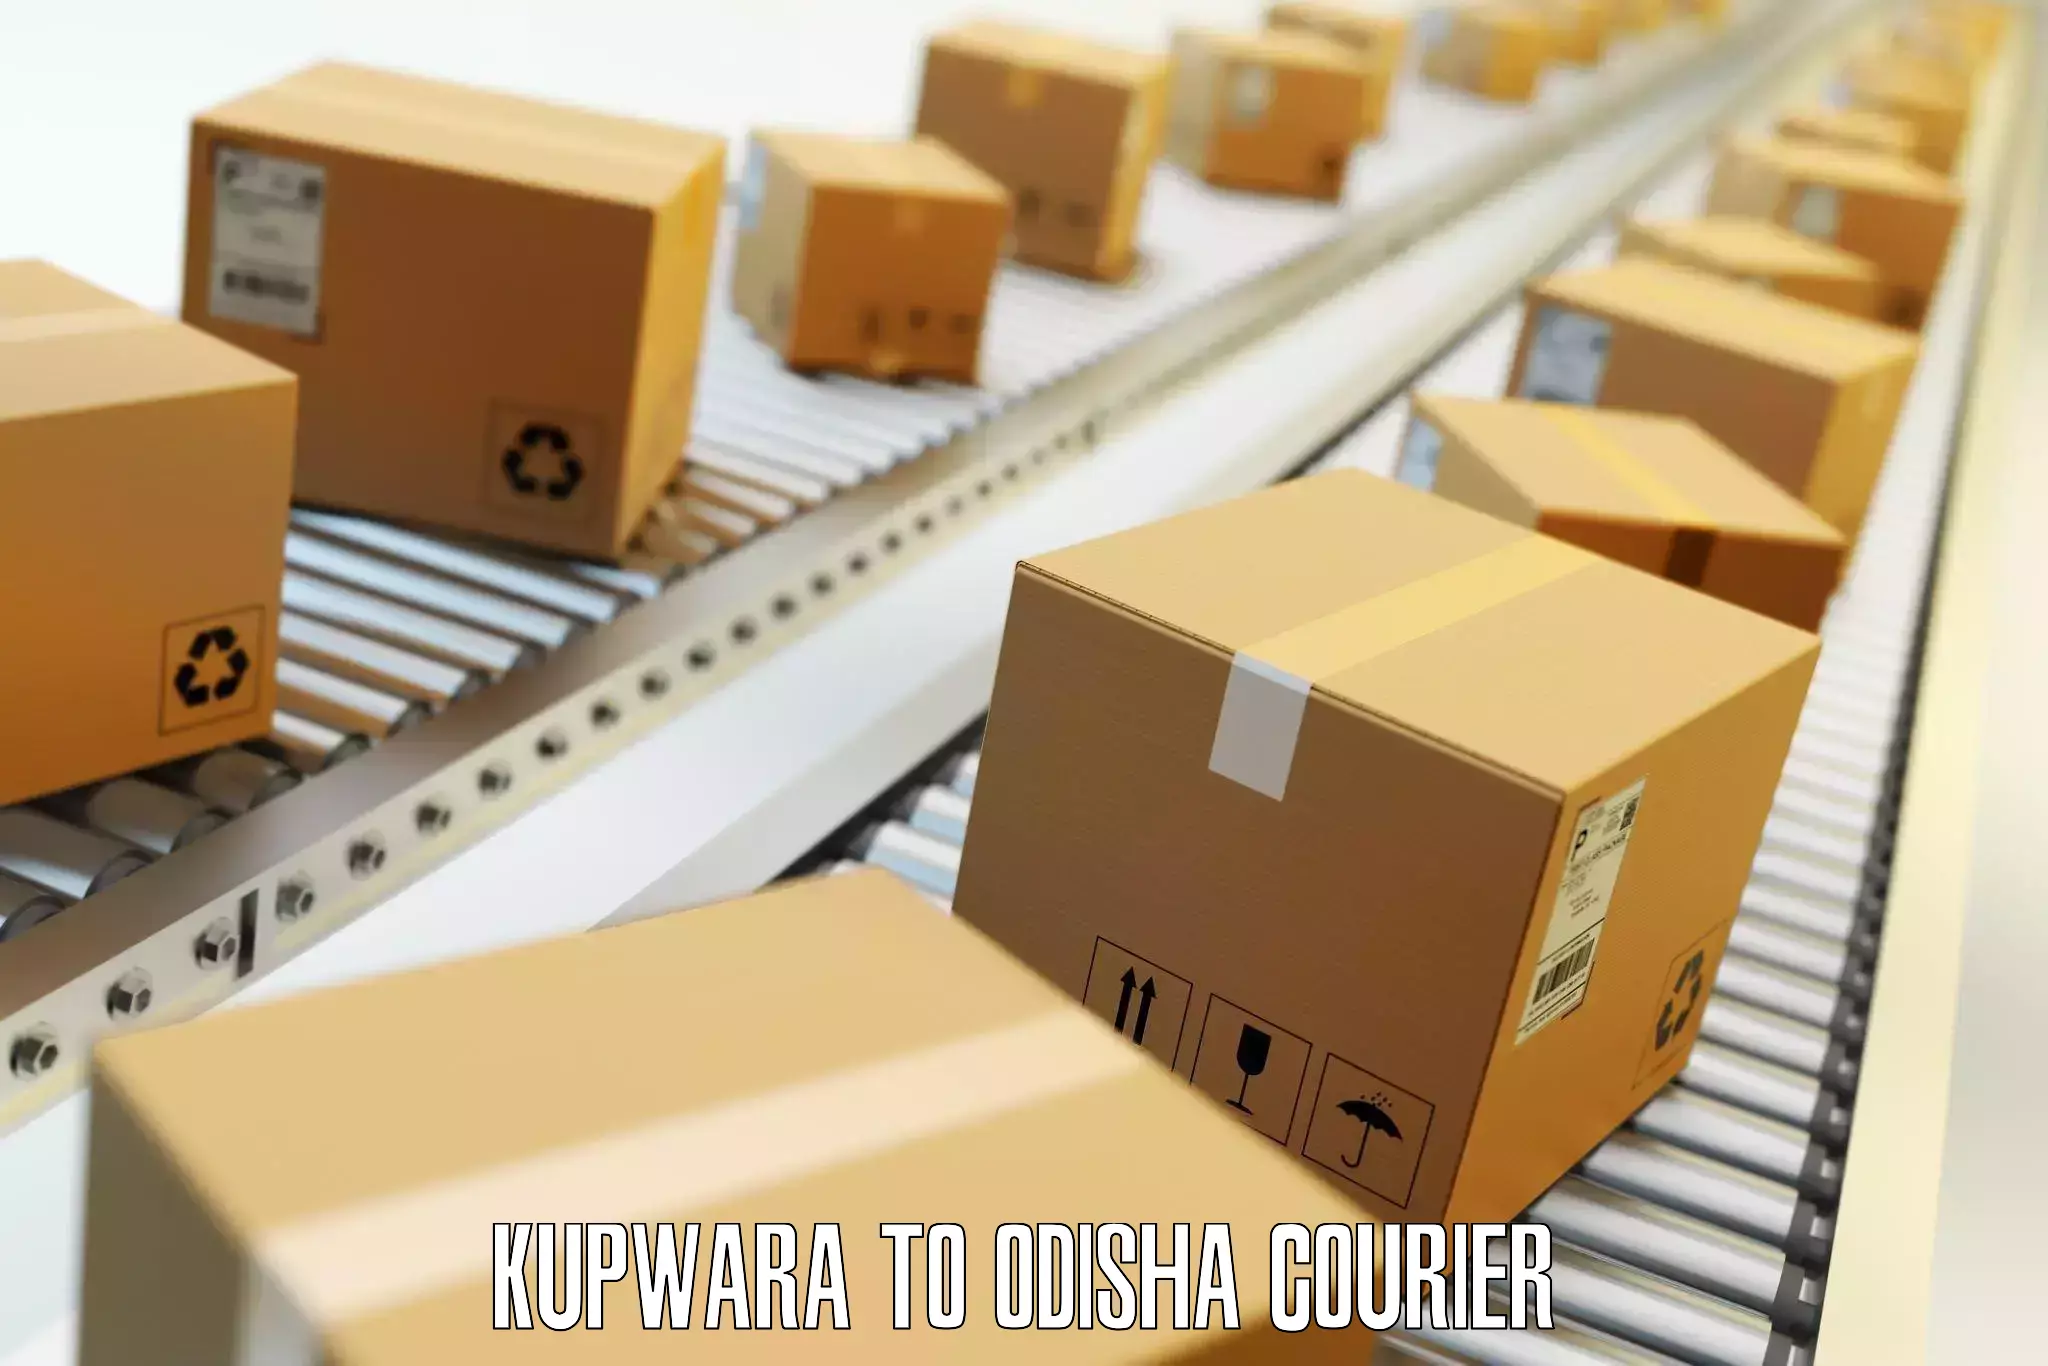 Door-to-door baggage service Kupwara to Adaspur